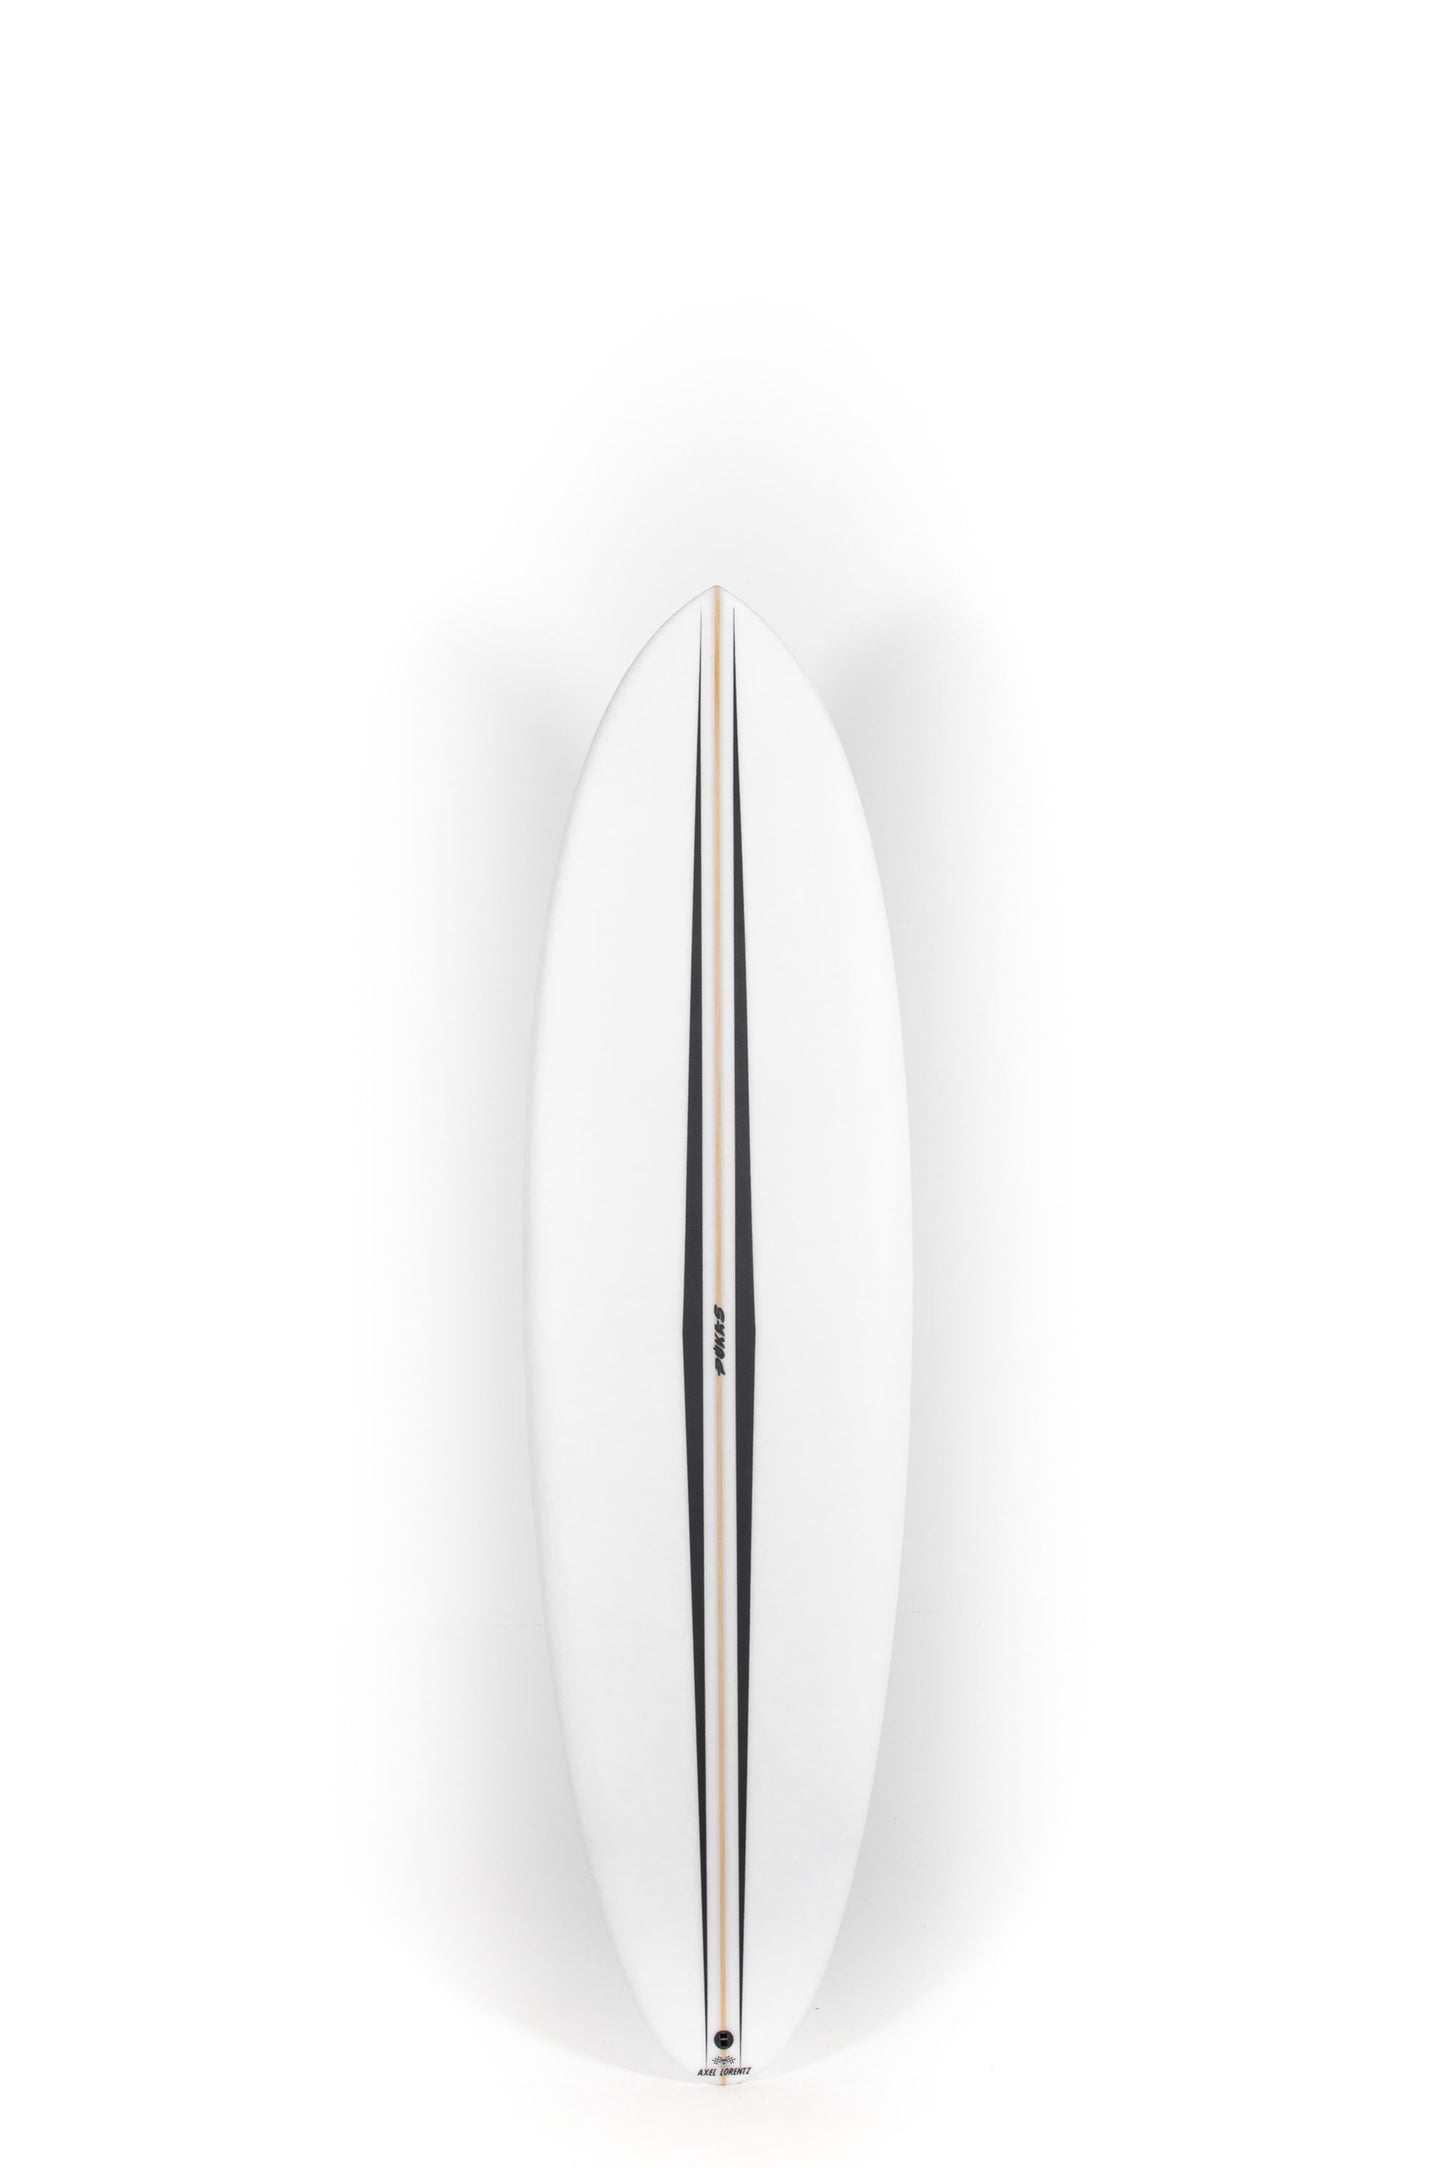 
                  
                    Pukas Surf Shop - Pukas Surfboard - LA CÔTE by Axel Lorentz - 6'9" x 21,31 x 2,91 - 45,62L -  AX08436
                  
                